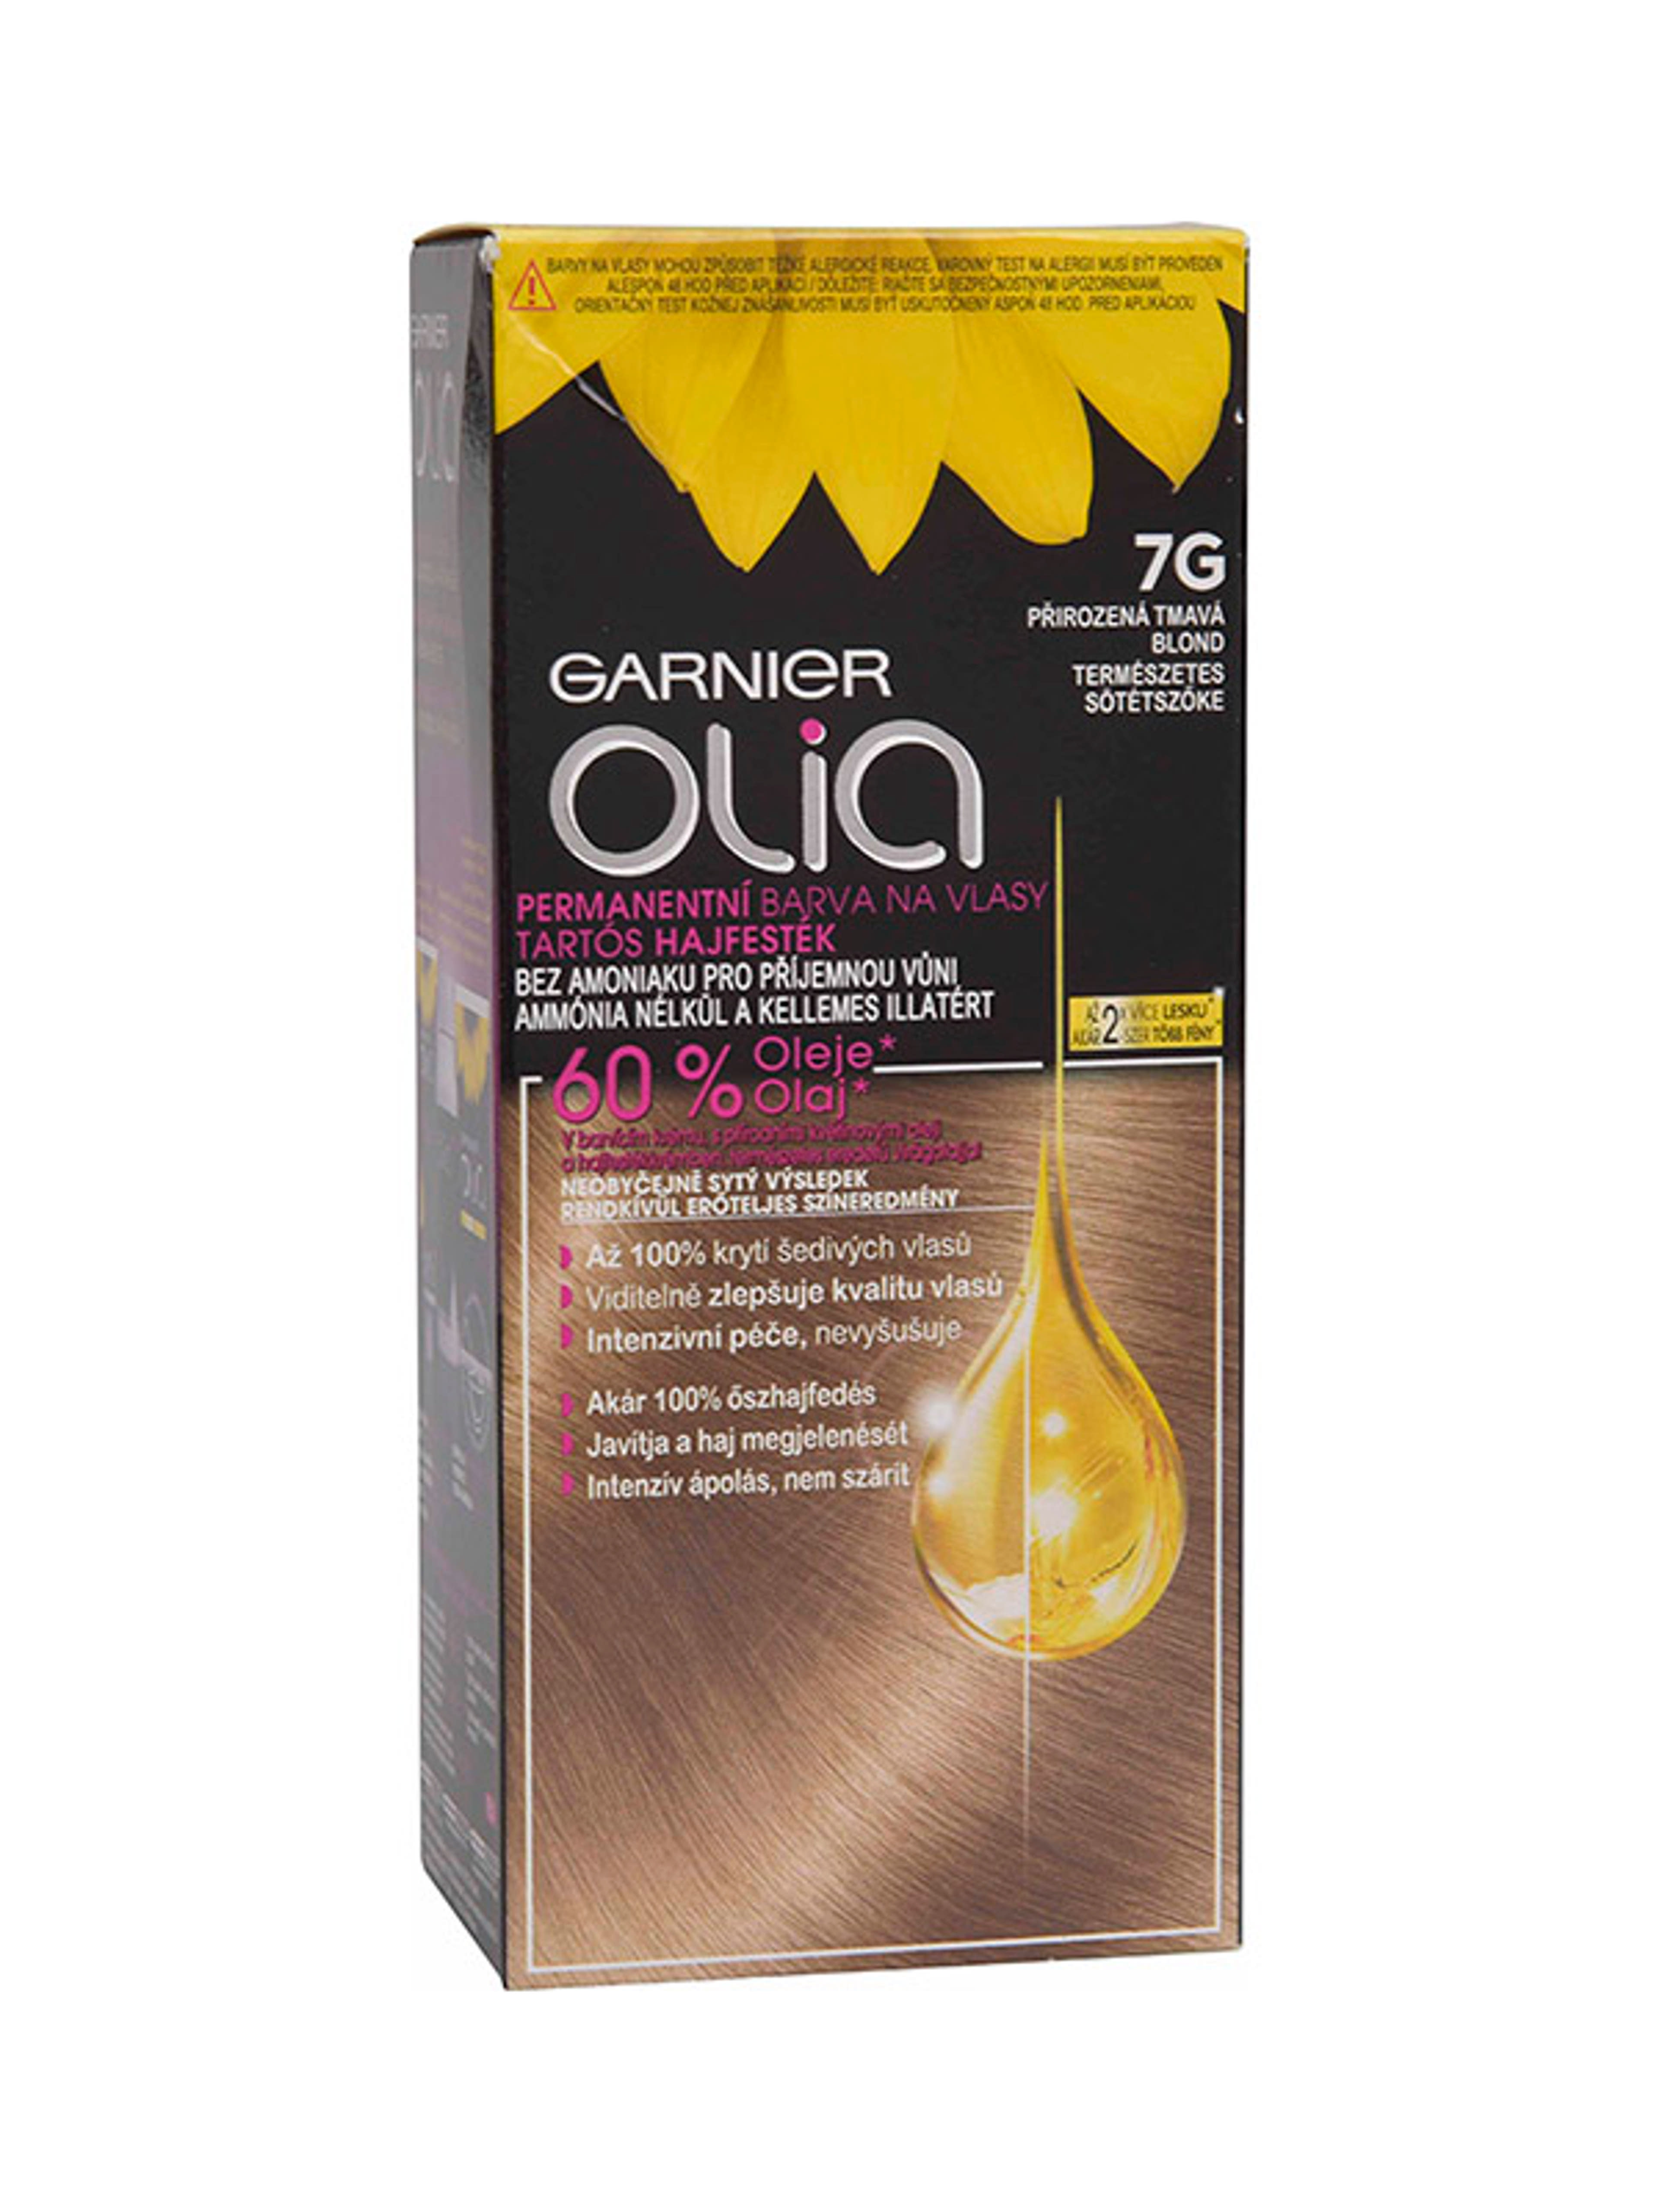 Garnier Olia tartós hajfesték 7G Természetes sötétszőke - 1 db-1